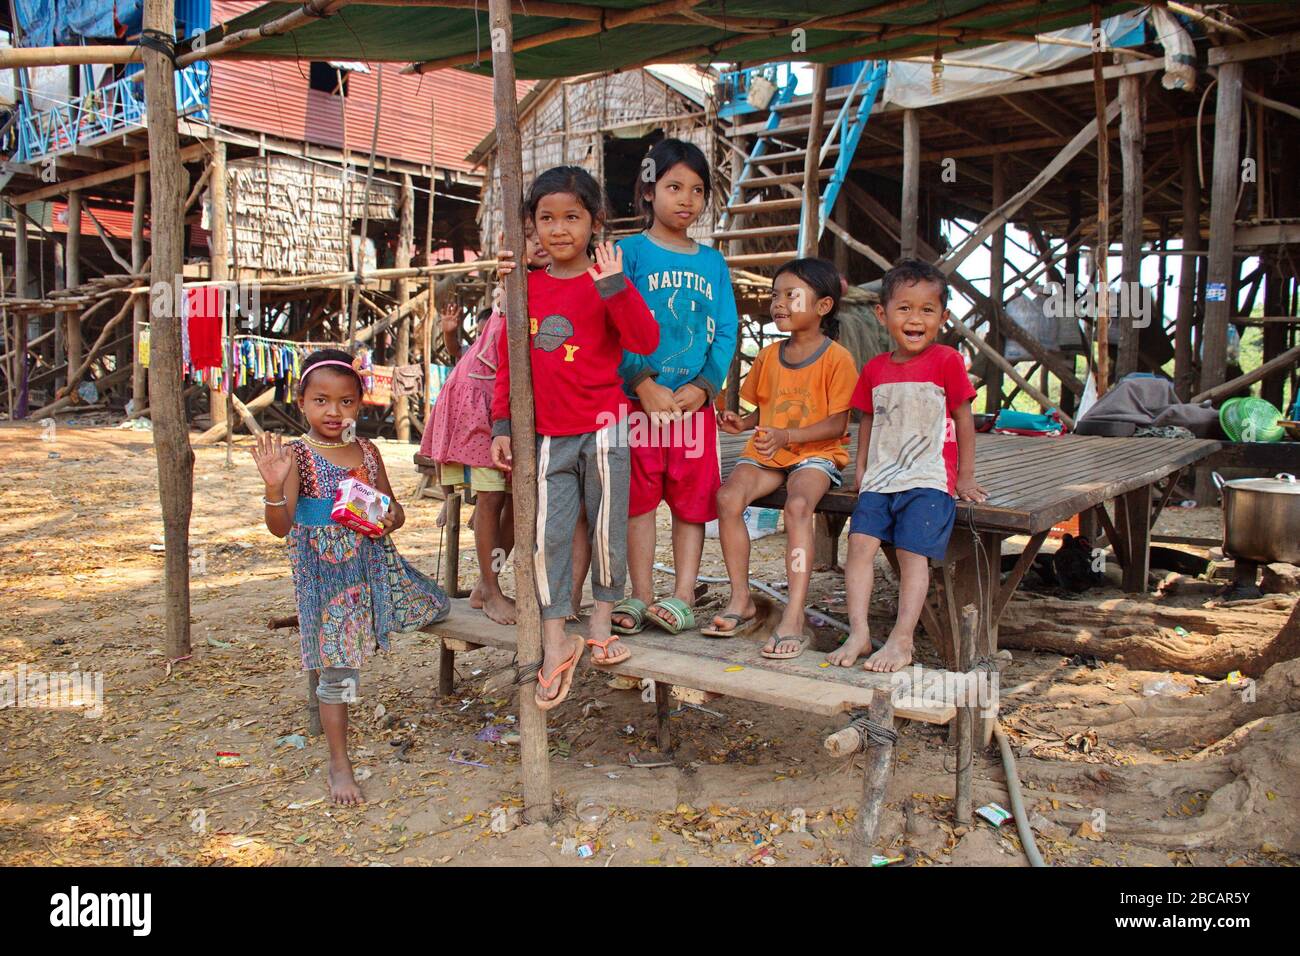 Groupe d'enfants devant la maison dans le village de pêcheurs au Cambodge Banque D'Images